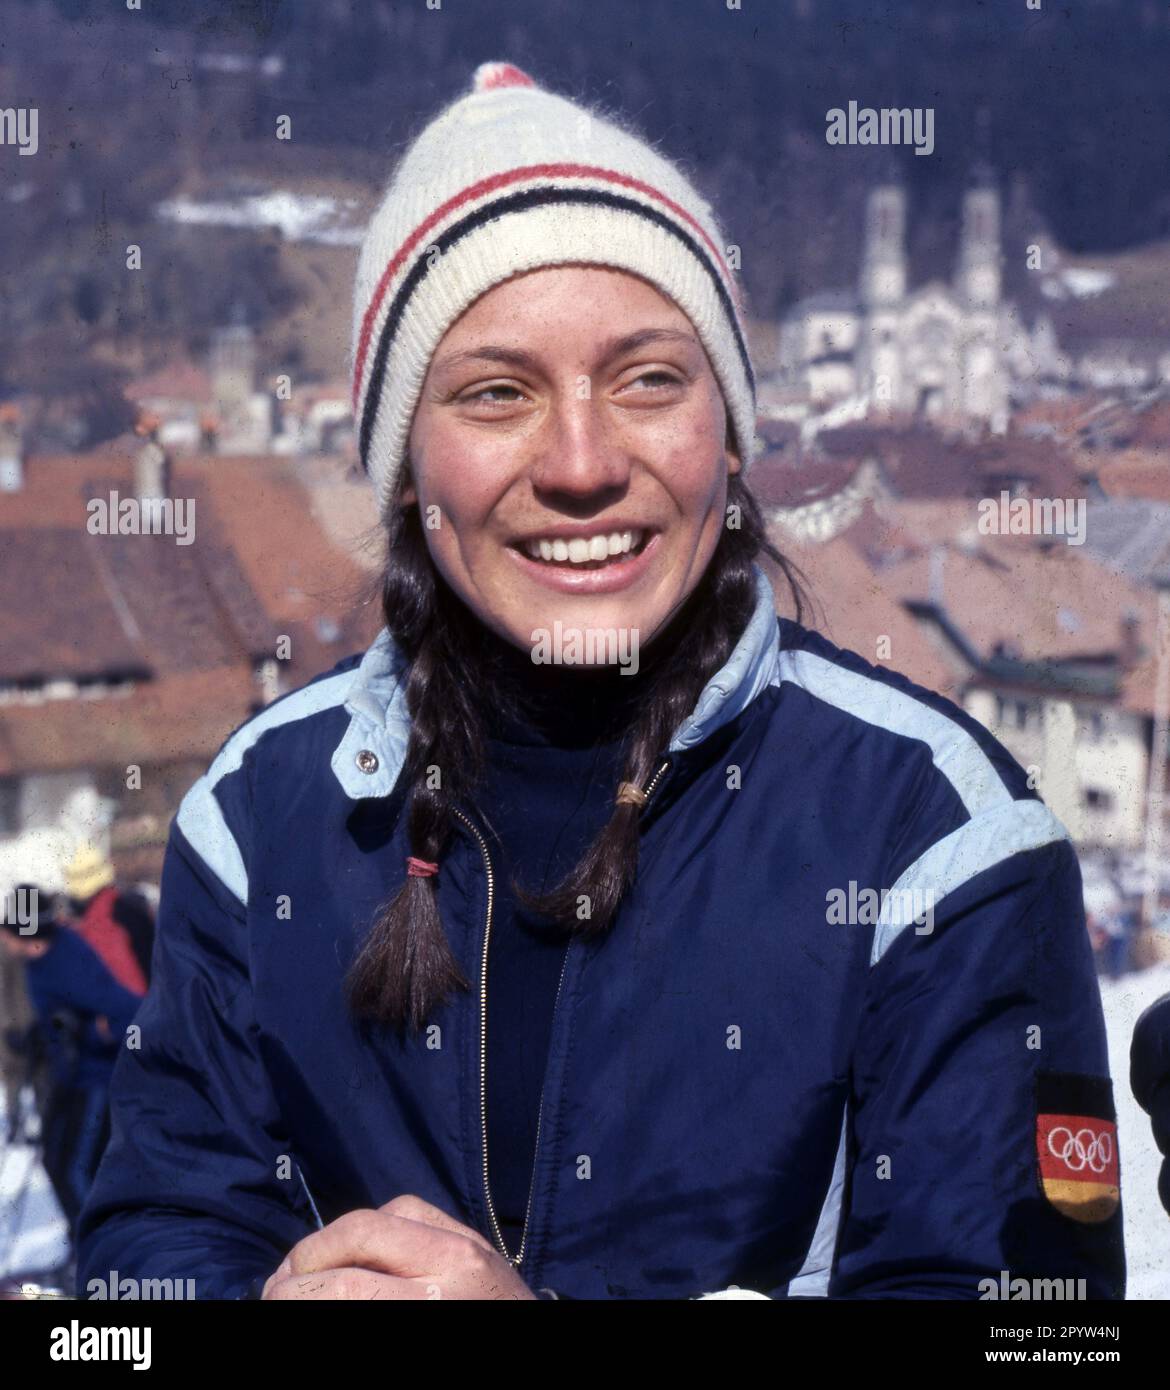 Alpine skiing: Rosi Mittermaier (Germany) Portrait 01.03.1968 (estimated). [automated translation] Stock Photo